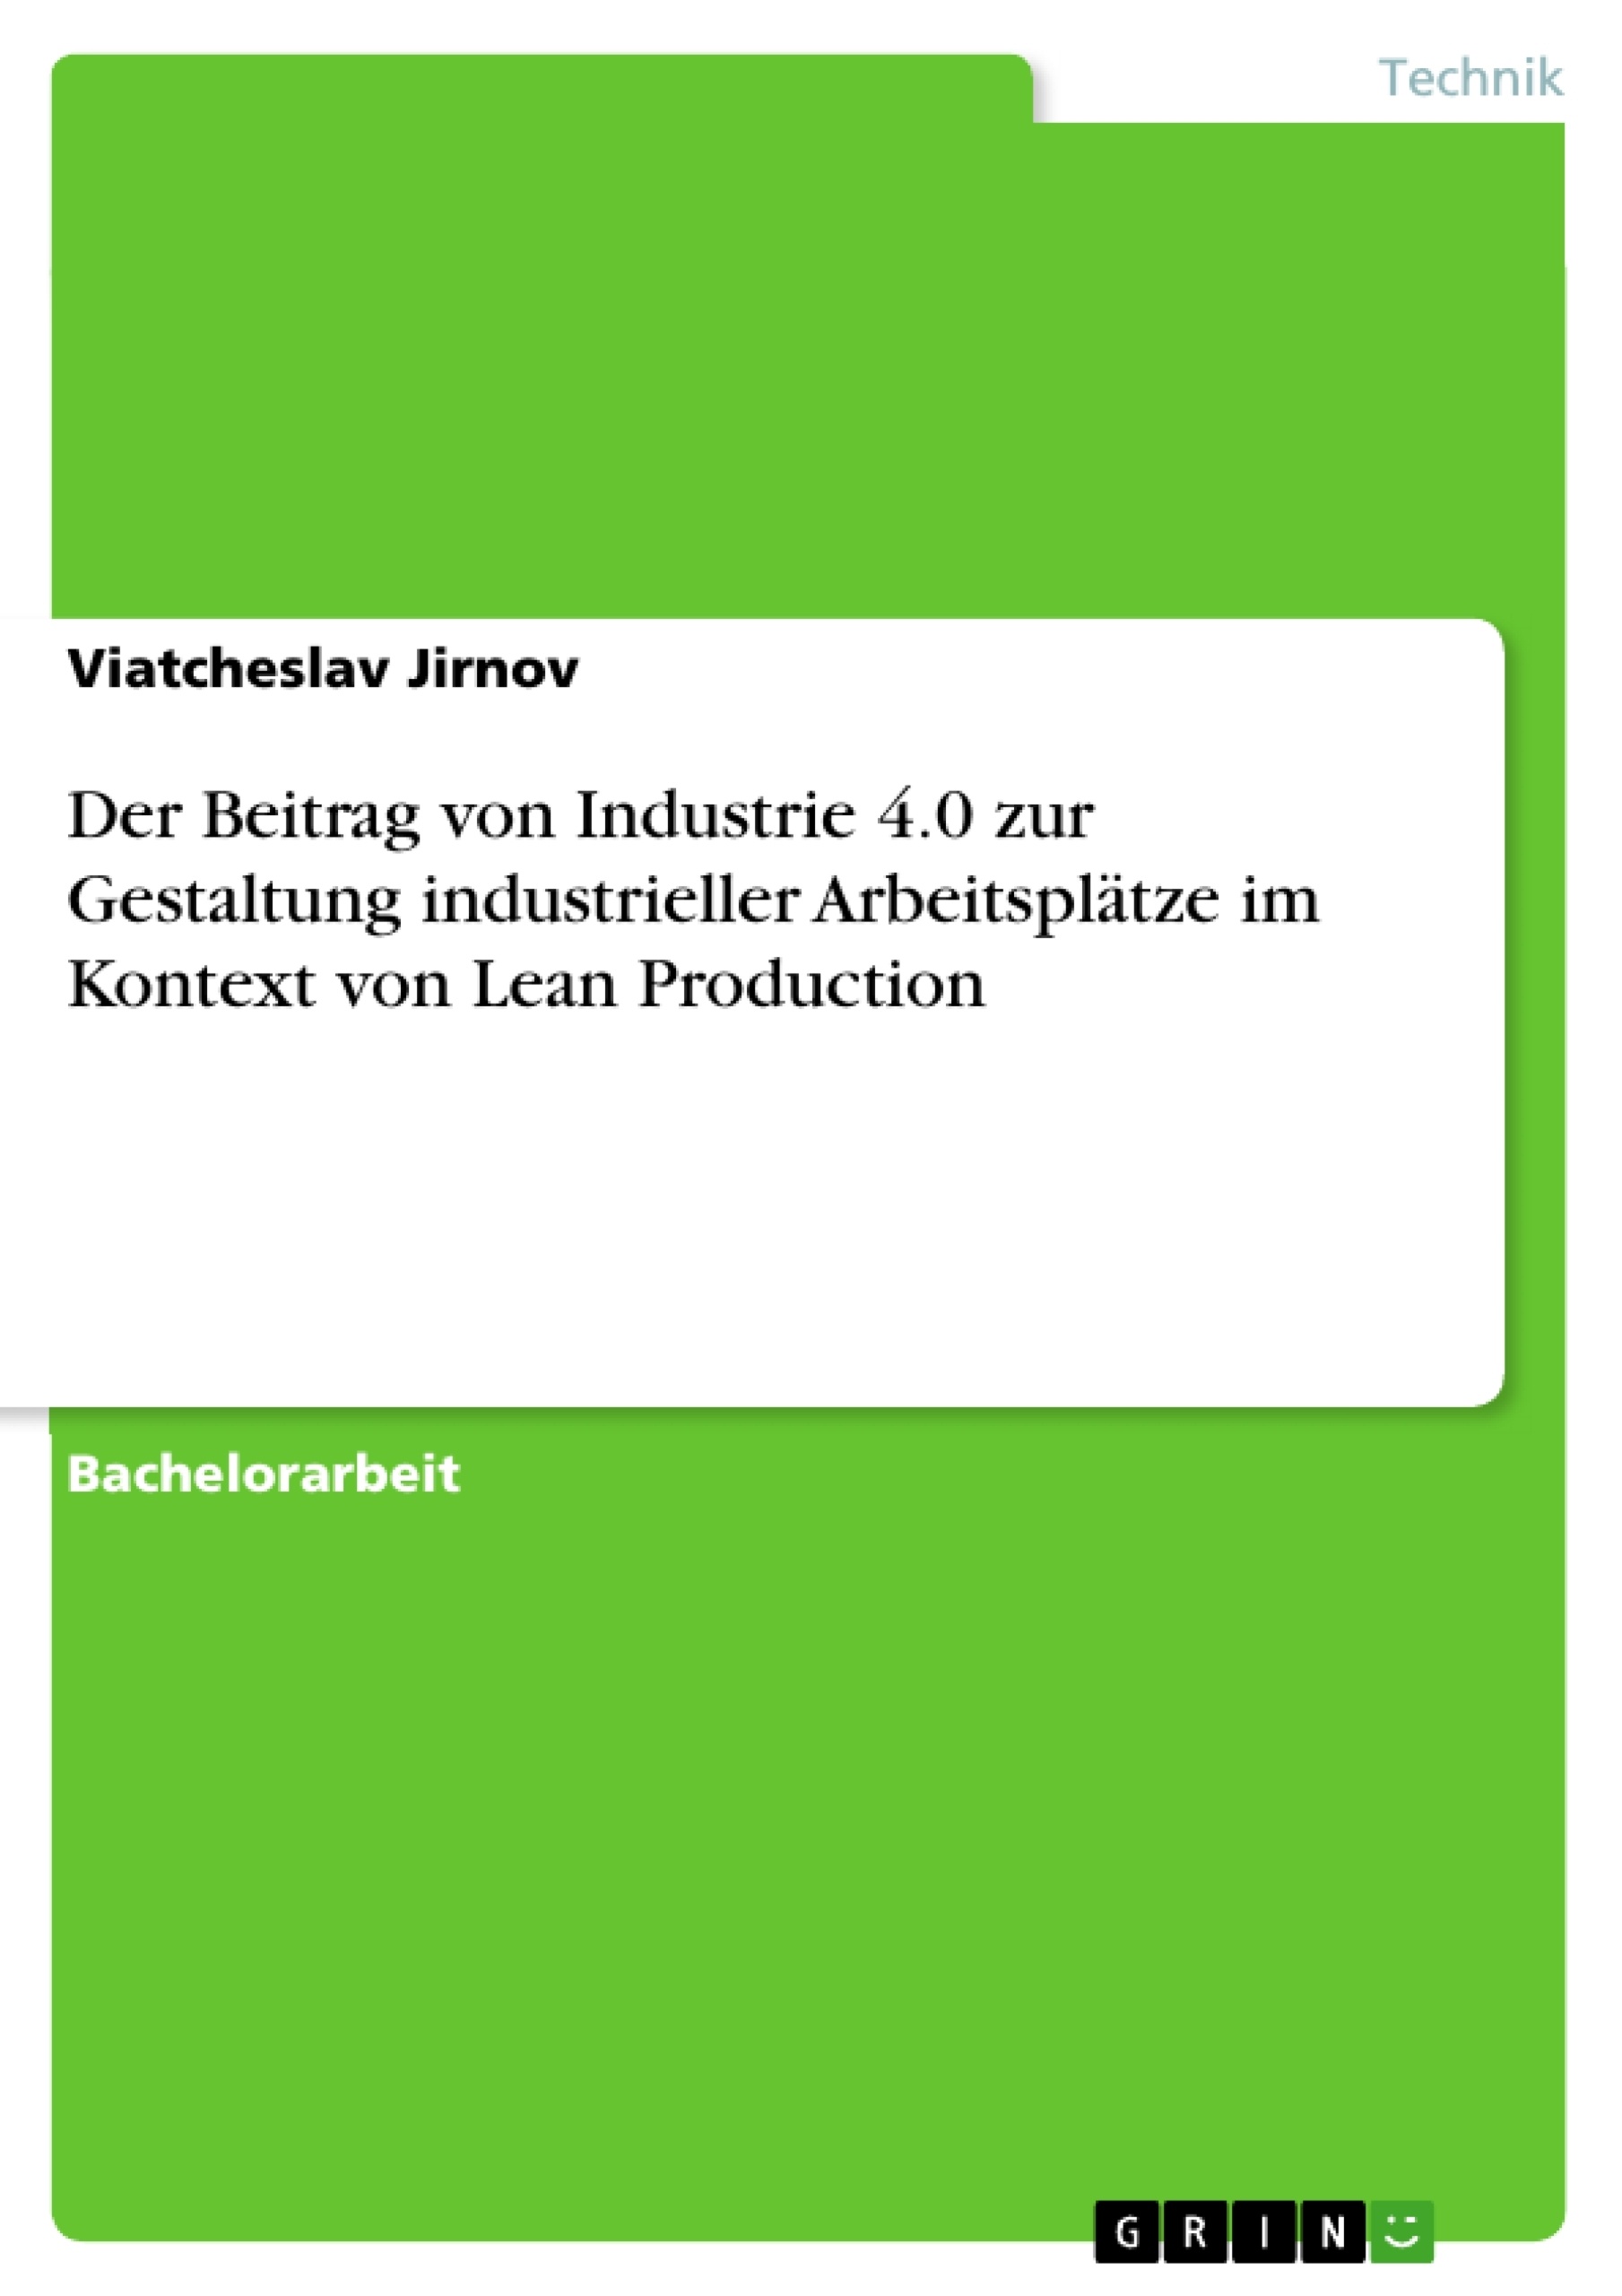 Título: Der Beitrag von Industrie 4.0 zur Gestaltung industrieller Arbeitsplätze im Kontext von Lean Production